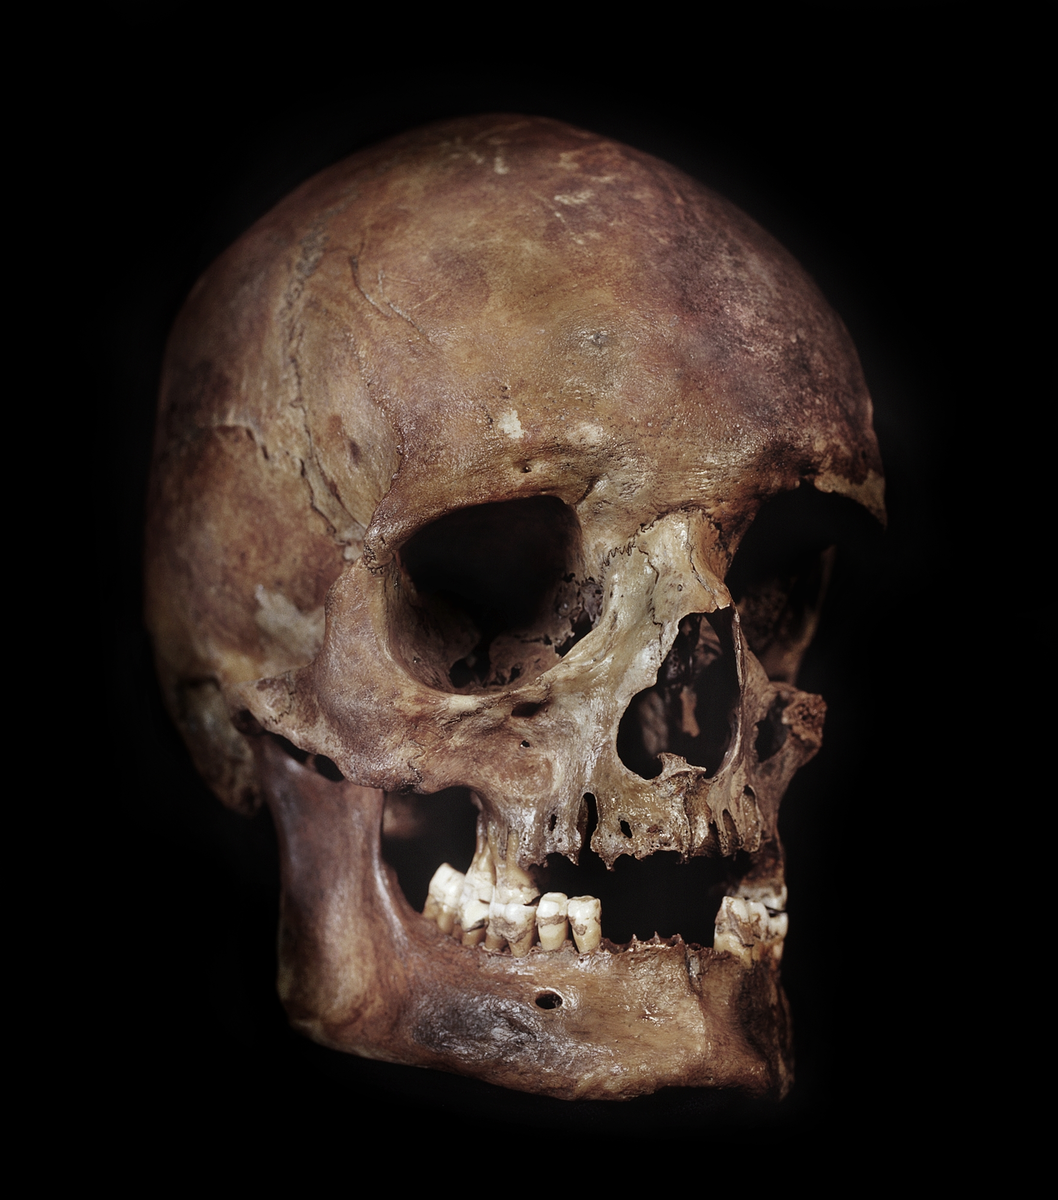 Kranium med 3 tänder. Vänster sida skör och trasig.